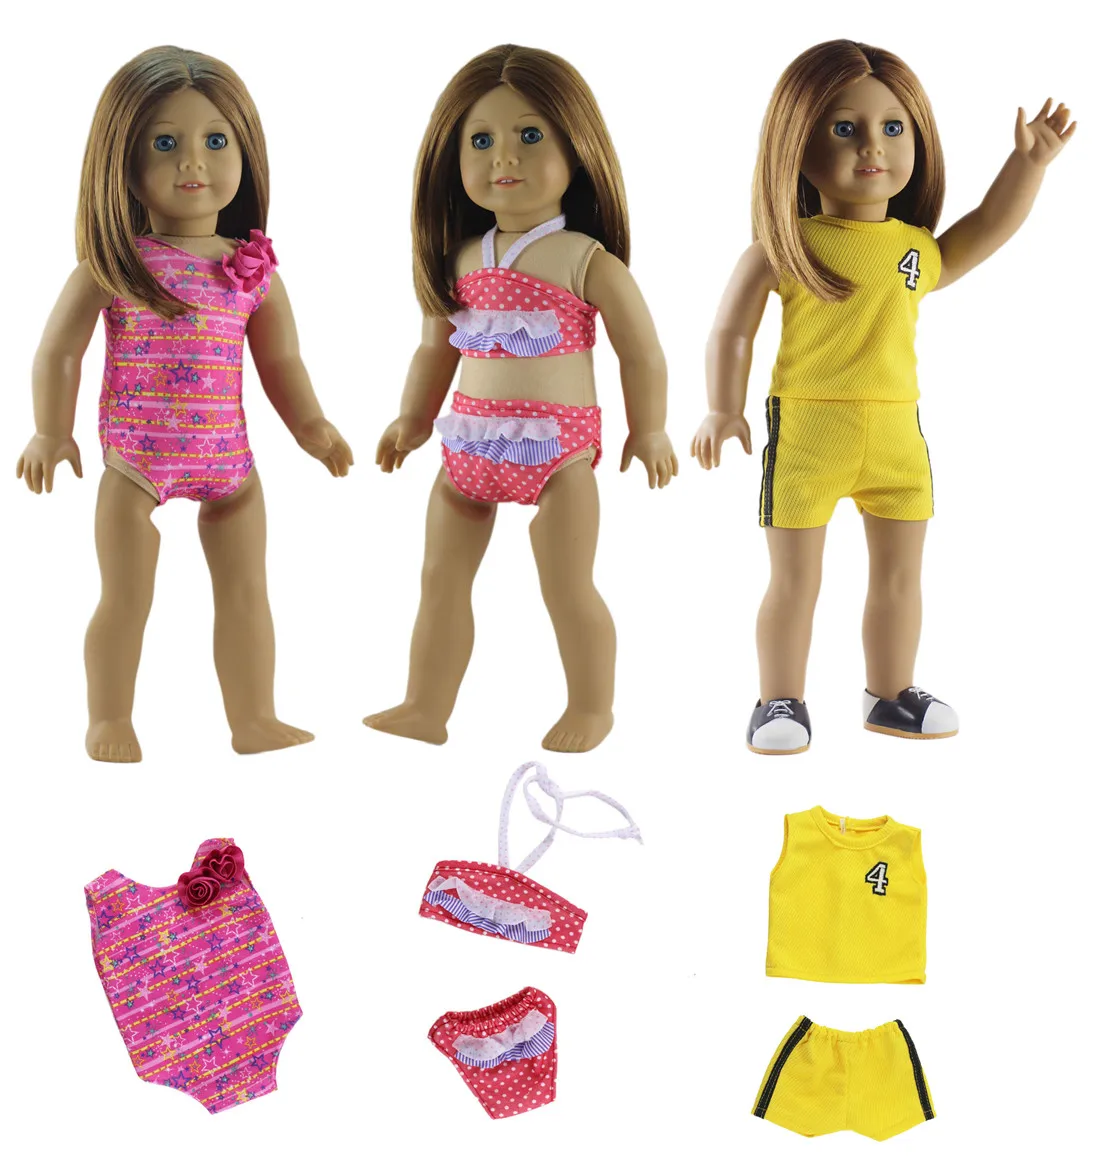 4в1 Комплект Одежда для кукол наряд пальто+ колготки перчатки сапоги для 1" Дюймов Американская кукла b02